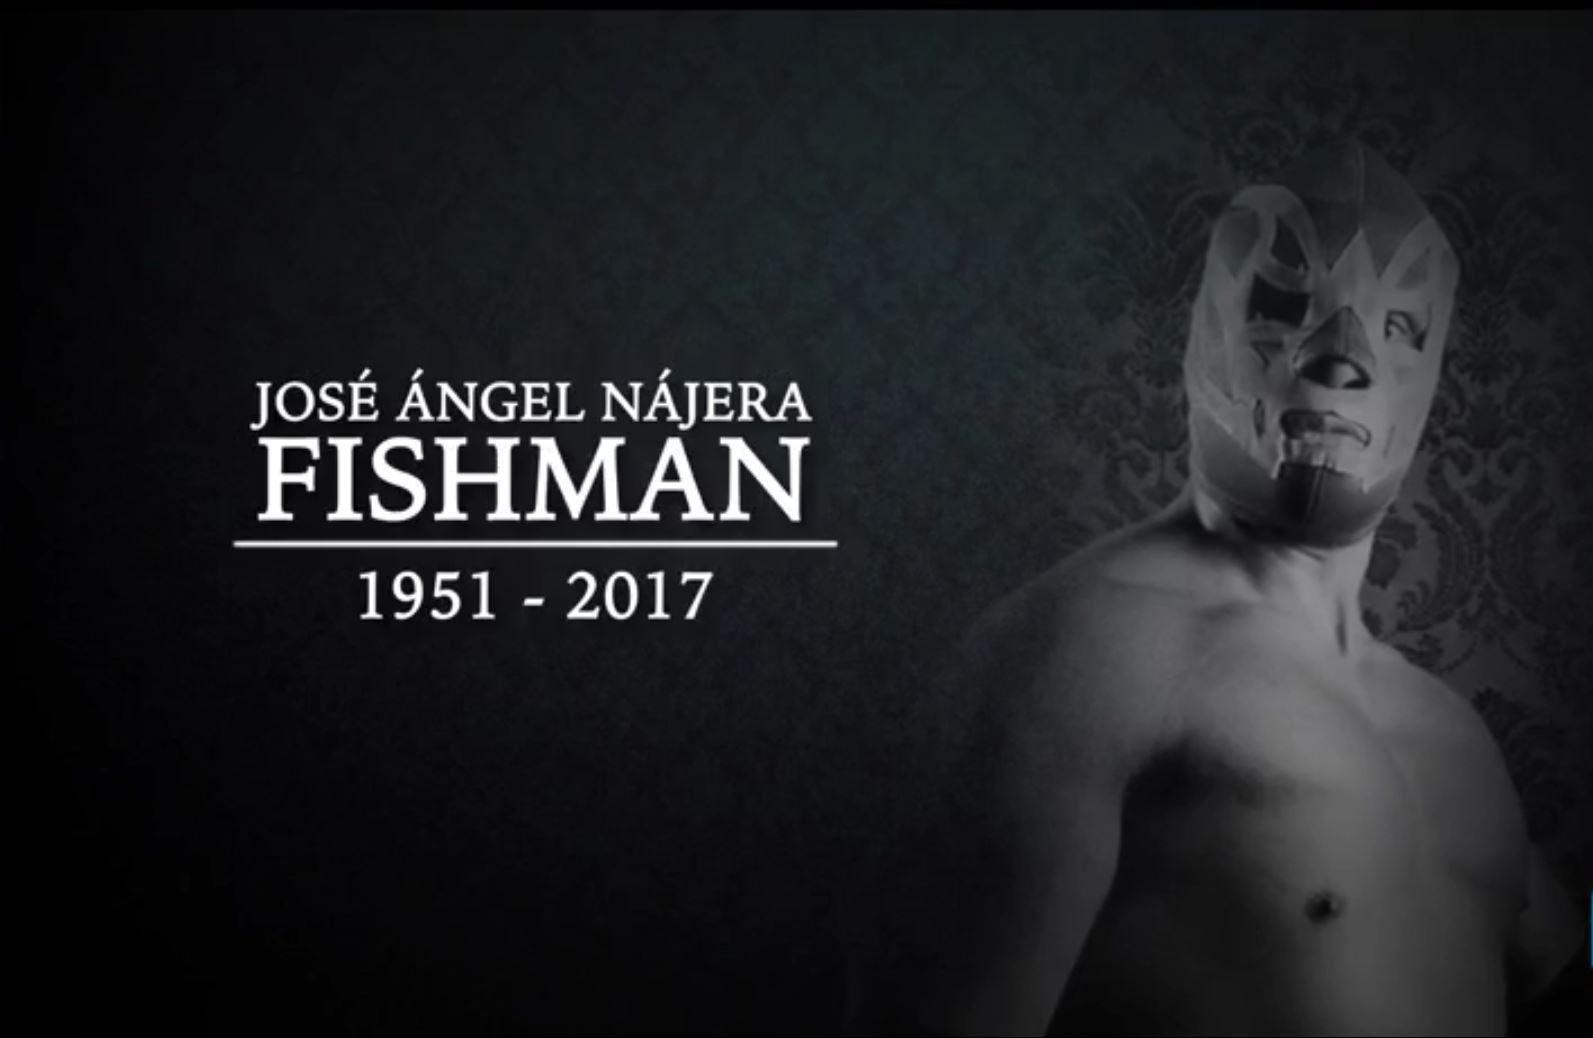 Fishman falleció a los 66 años (Noticieros Televisa)